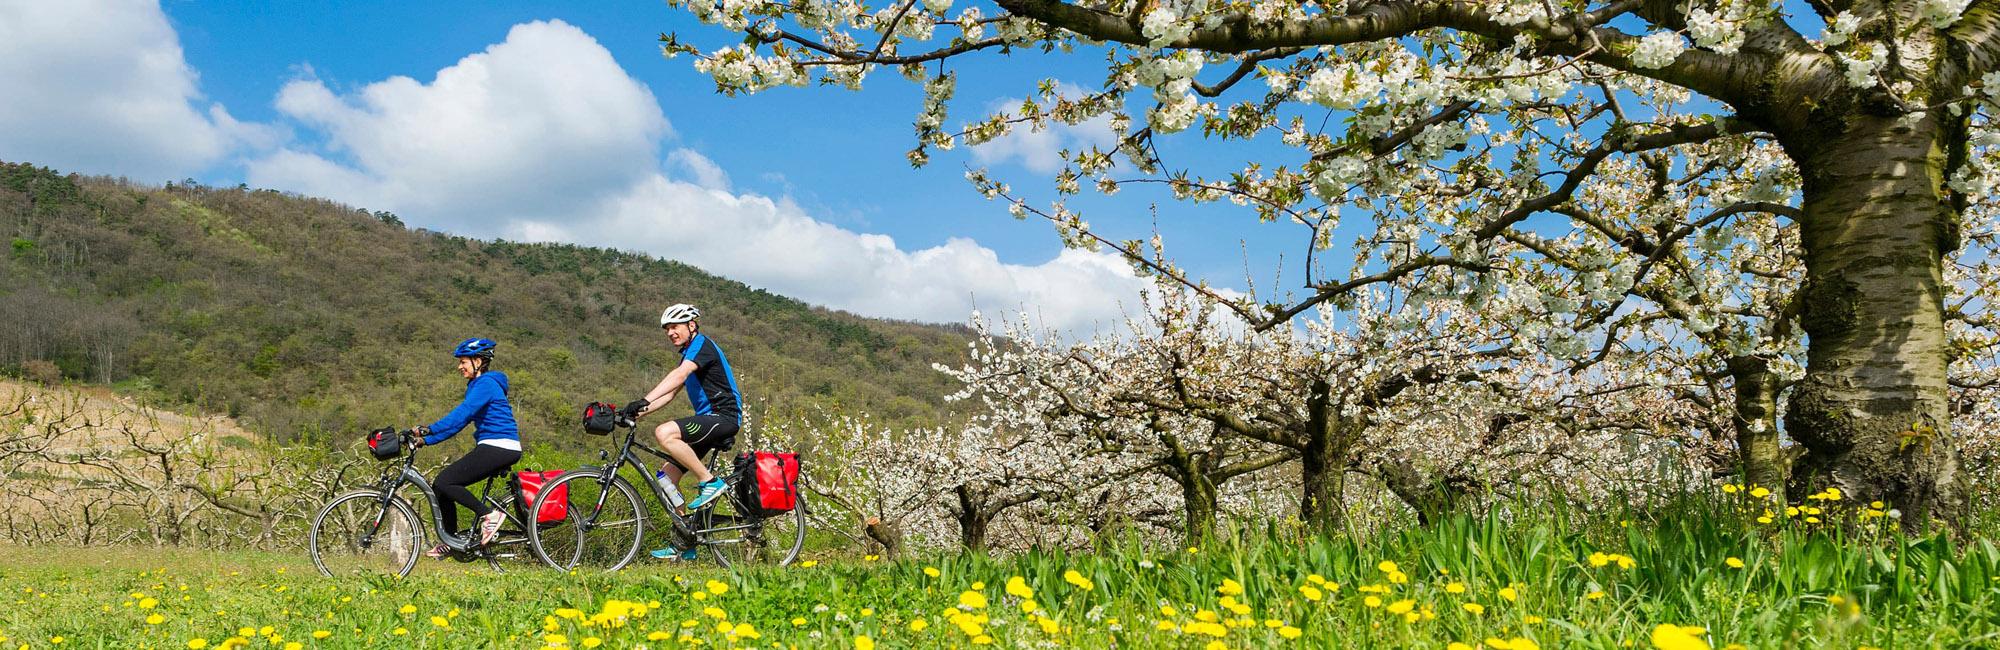 Via Rhôna fietsen in Zwitserland en Frankrijk - fietsvakantie van Genève naar Lyon